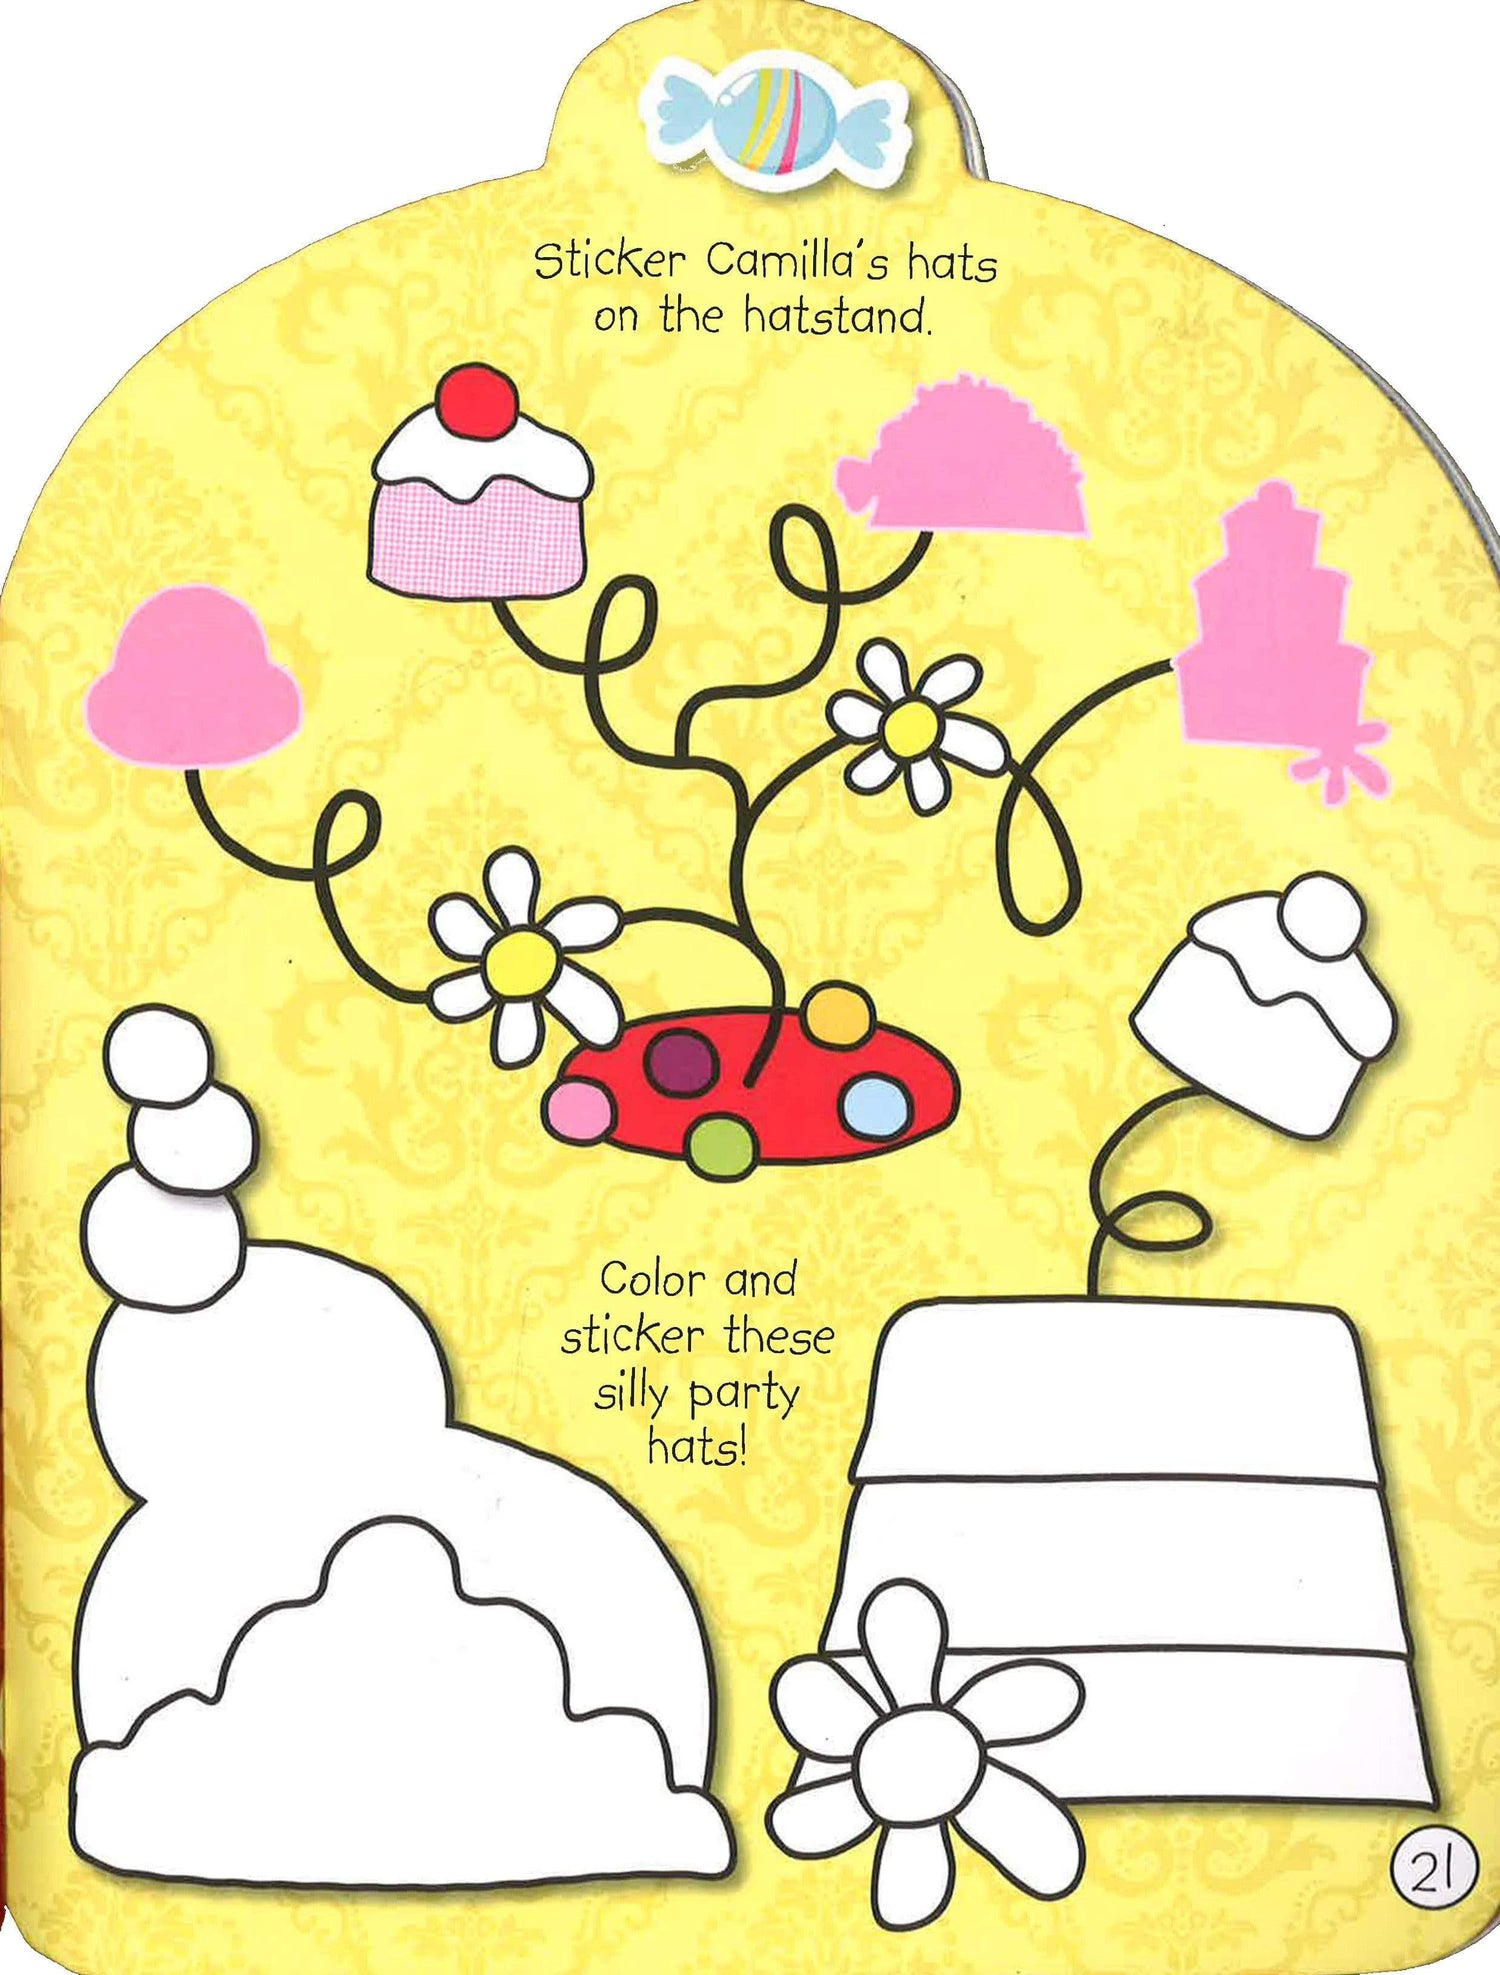 Camilla The Cupcake Fairy: Sticker Activity Book